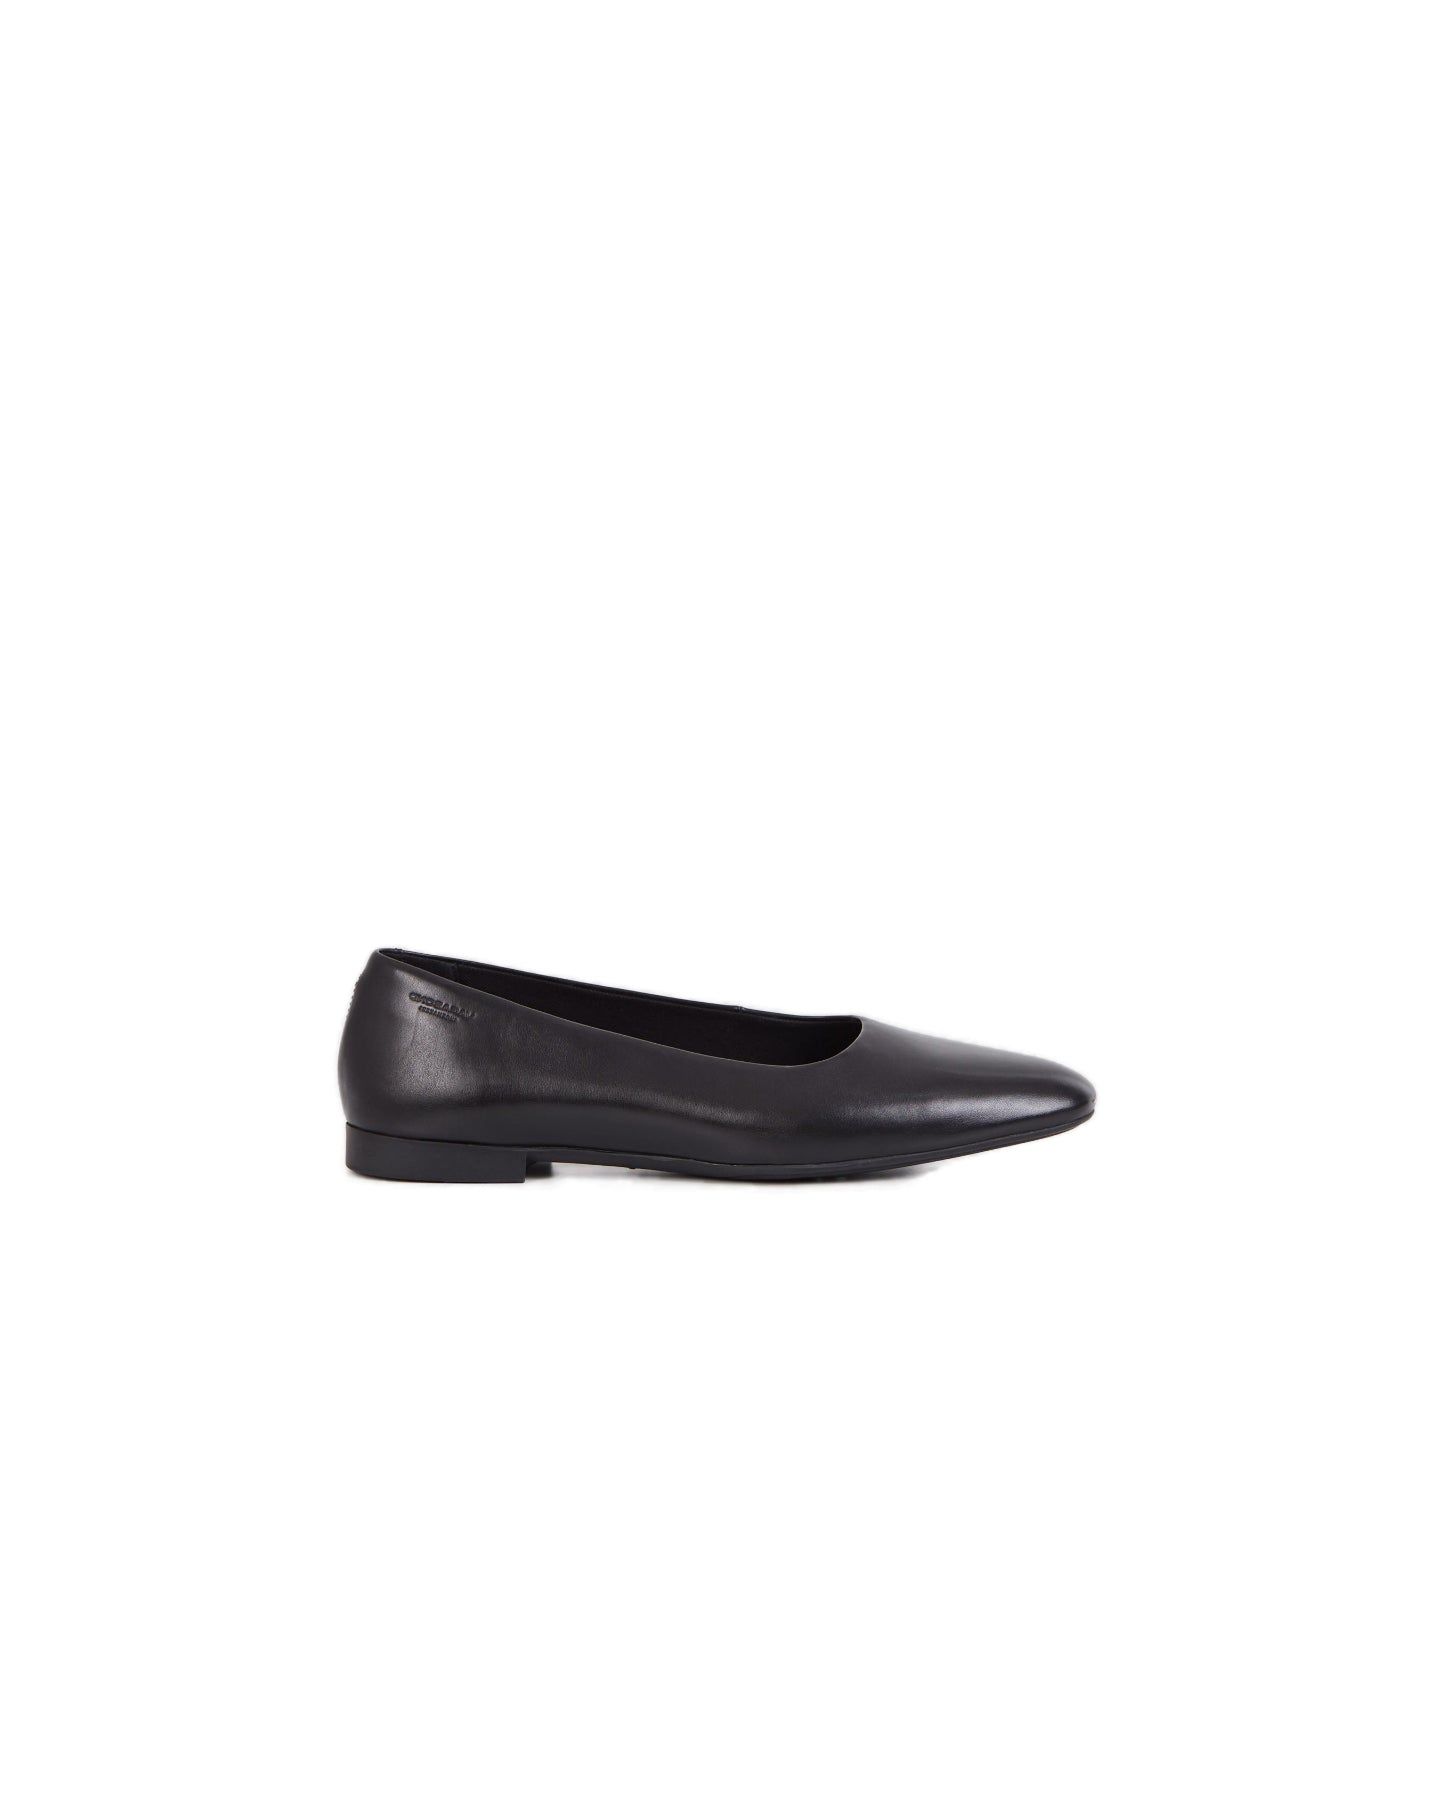 Sibel (5758-201-20) Shoes - Negro